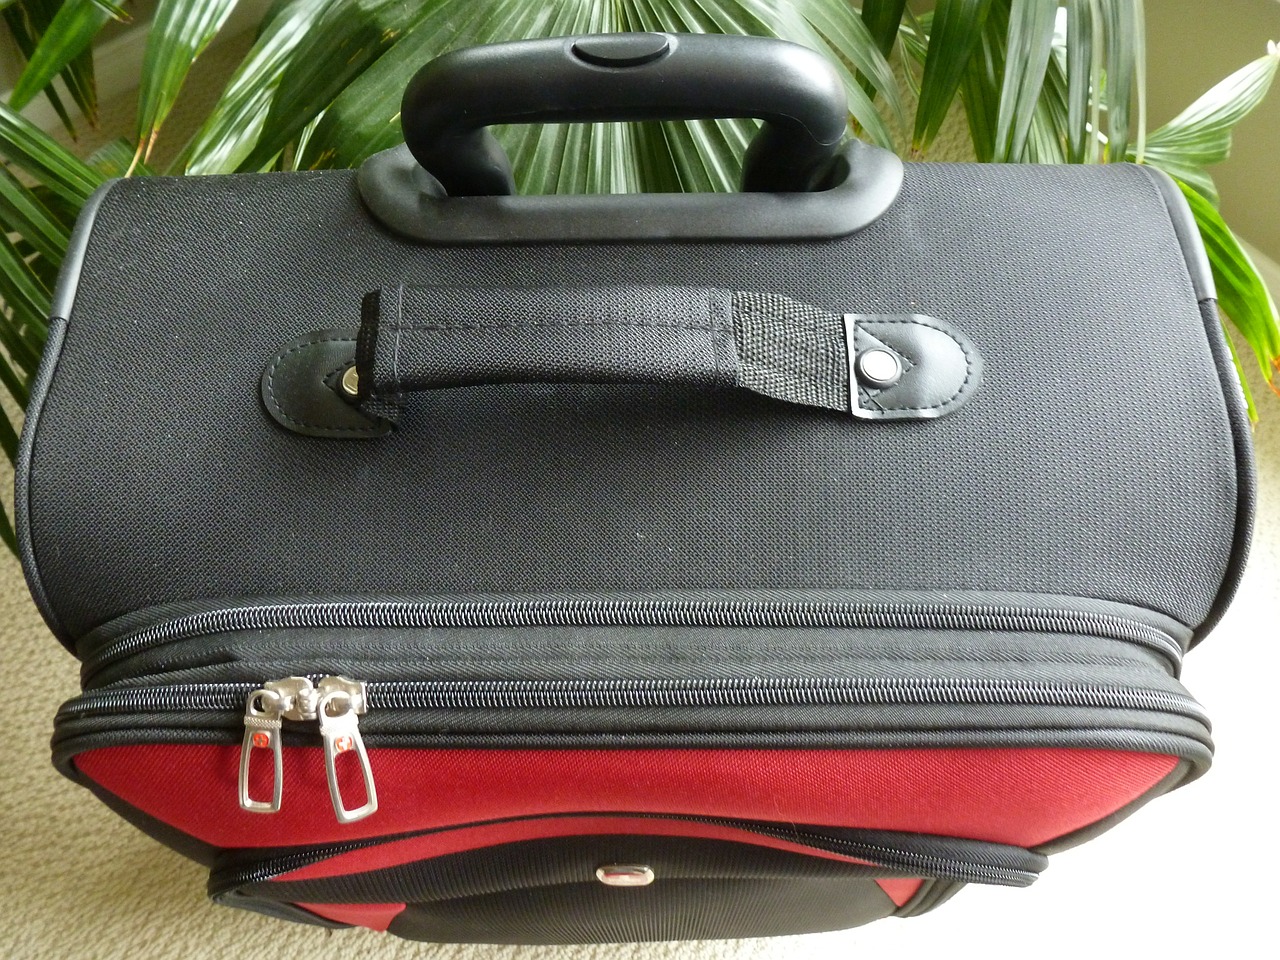 luggage suitcase baggage free photo